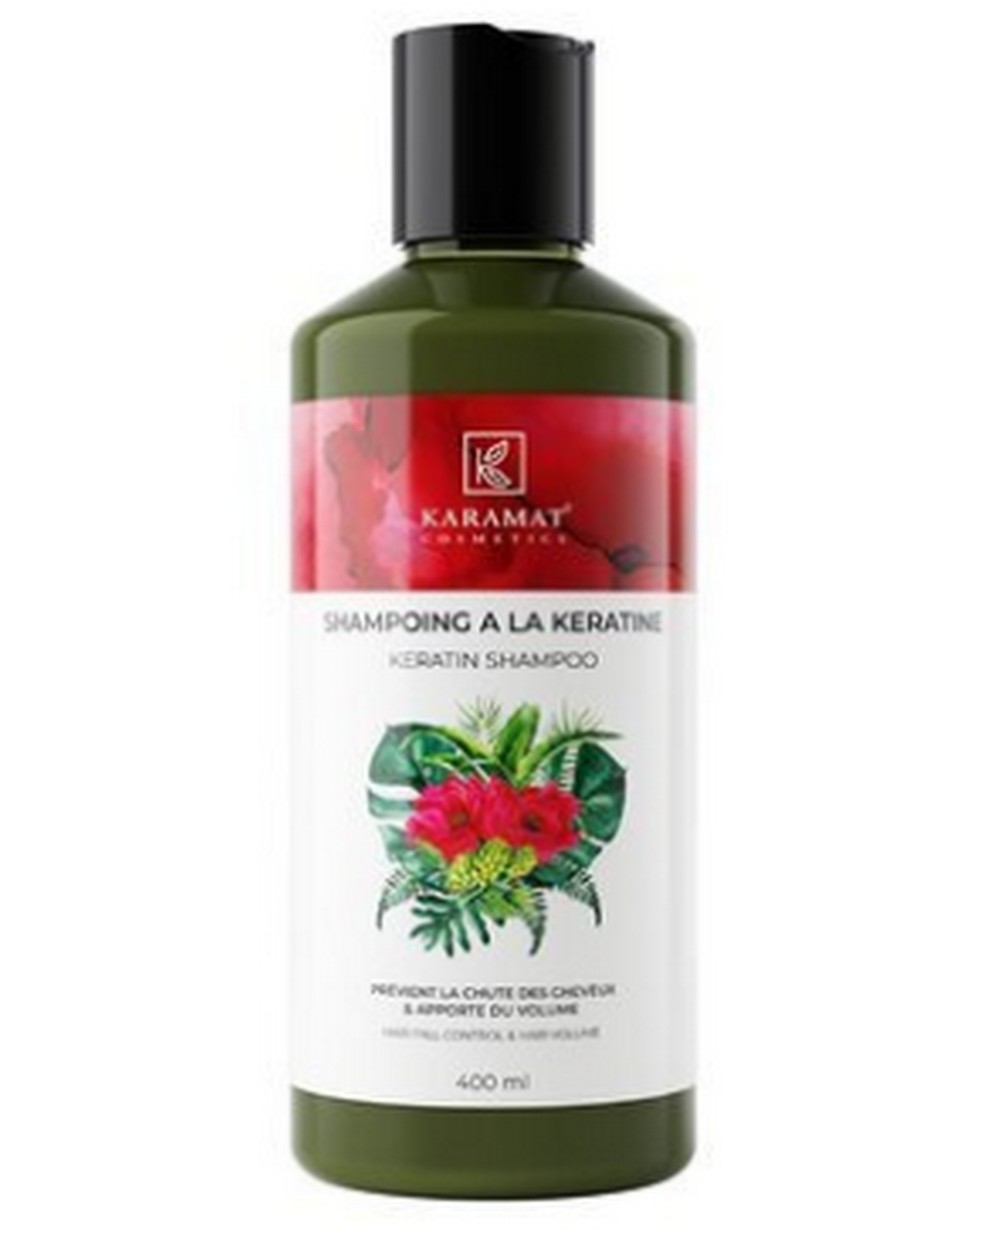 Karamat "Natural Keratin" Shampoo